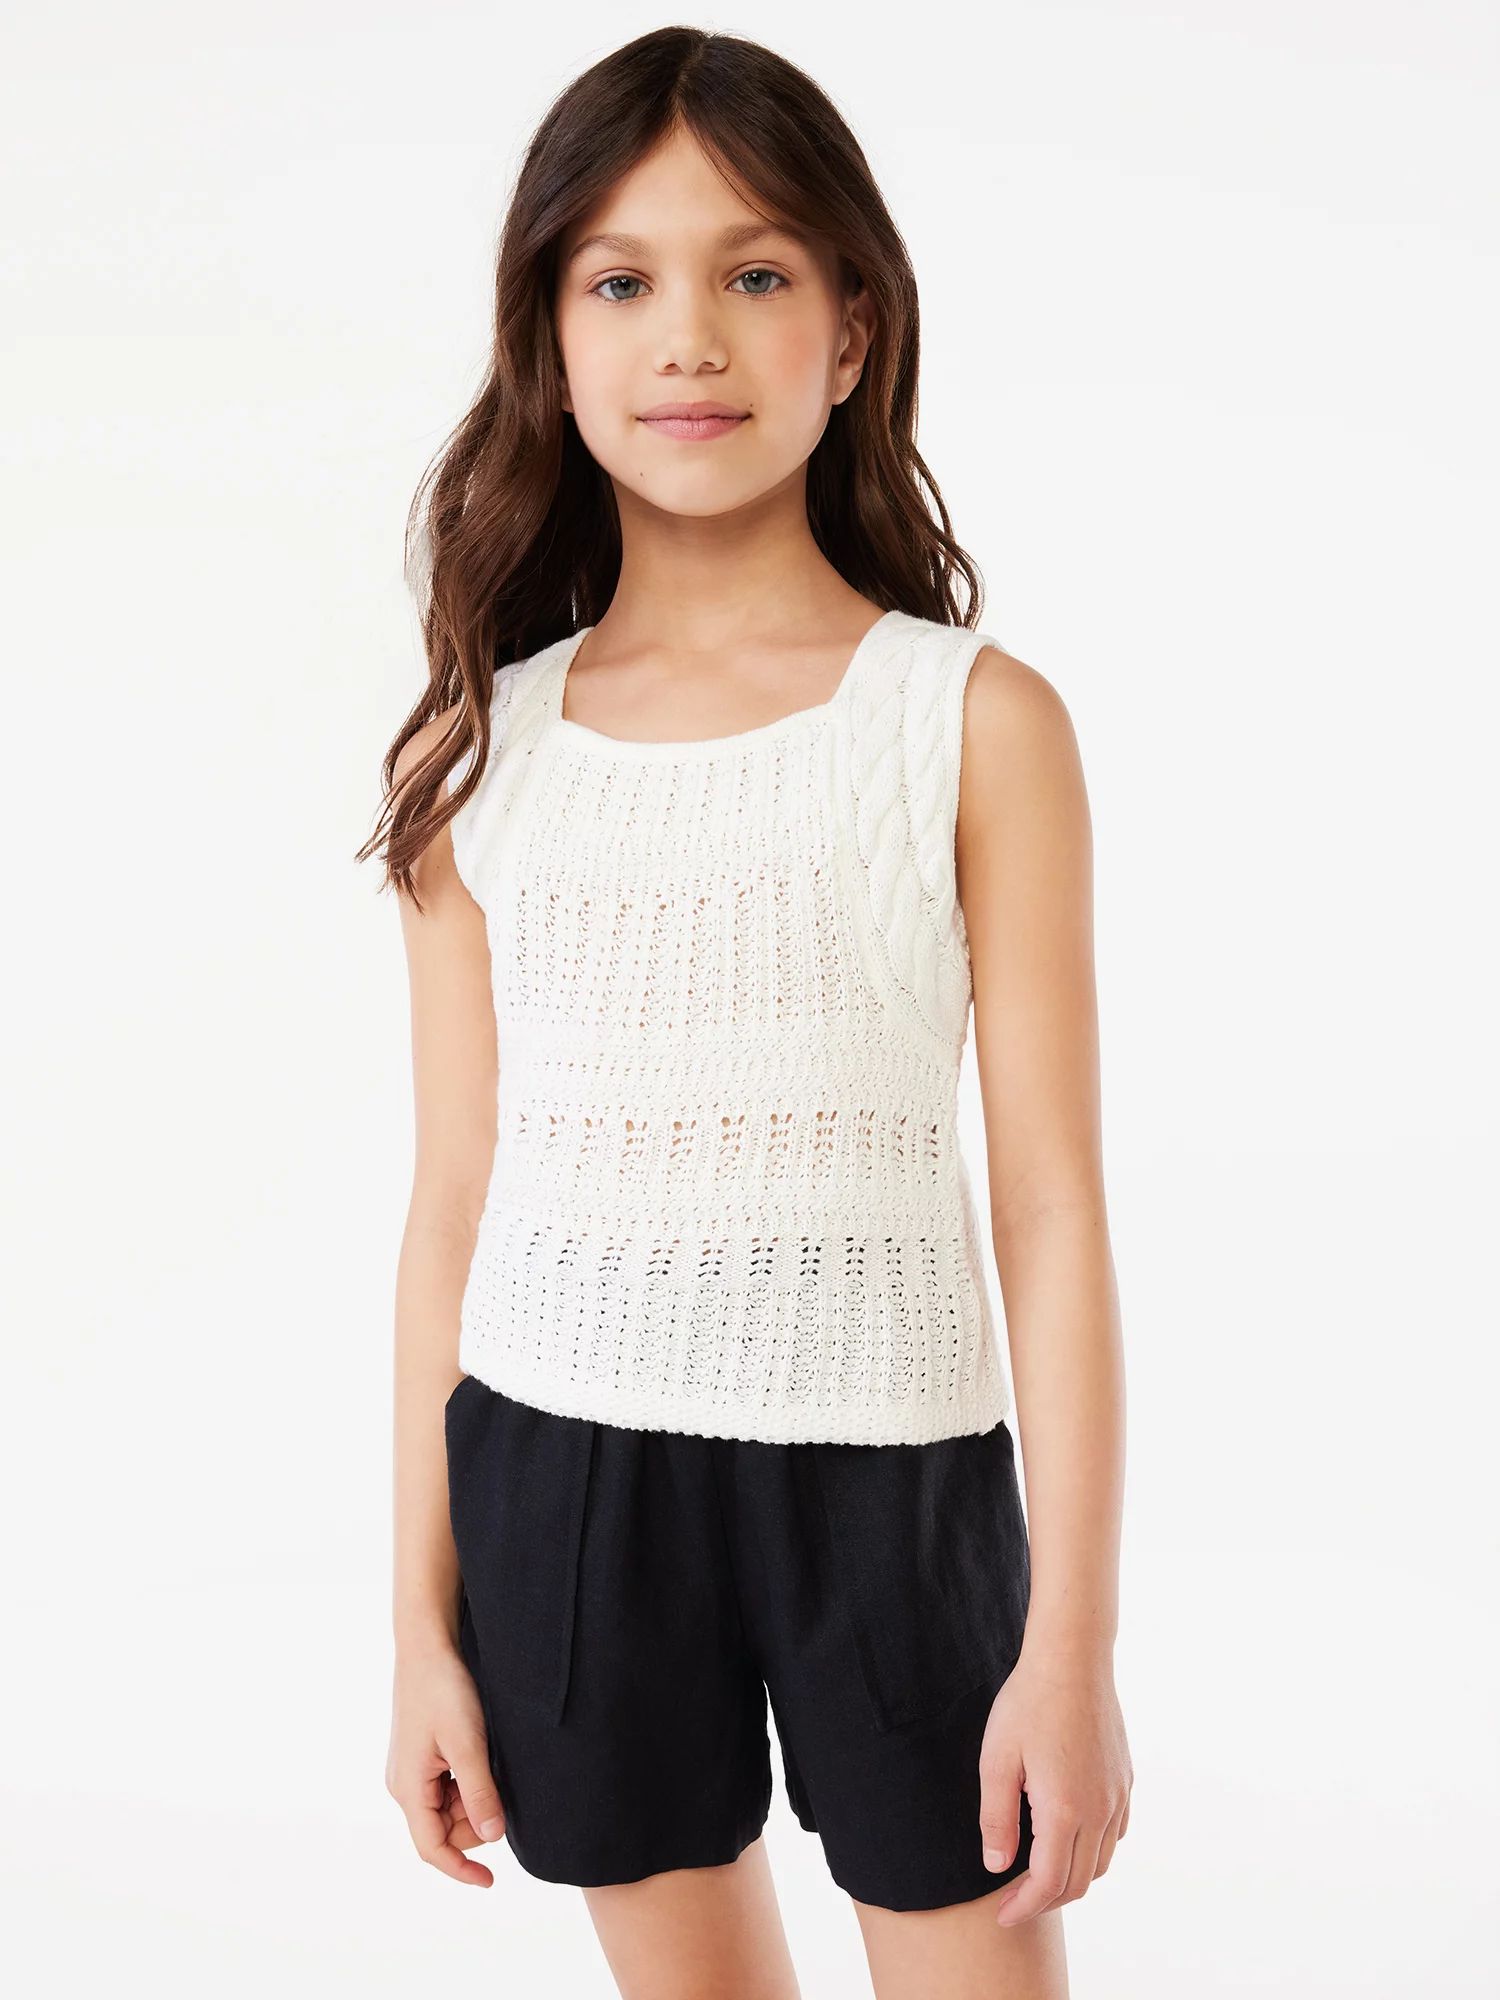 Scoop Girls Crochet Tank Top, Sizes 4-16 - Walmart.com | Walmart (US)